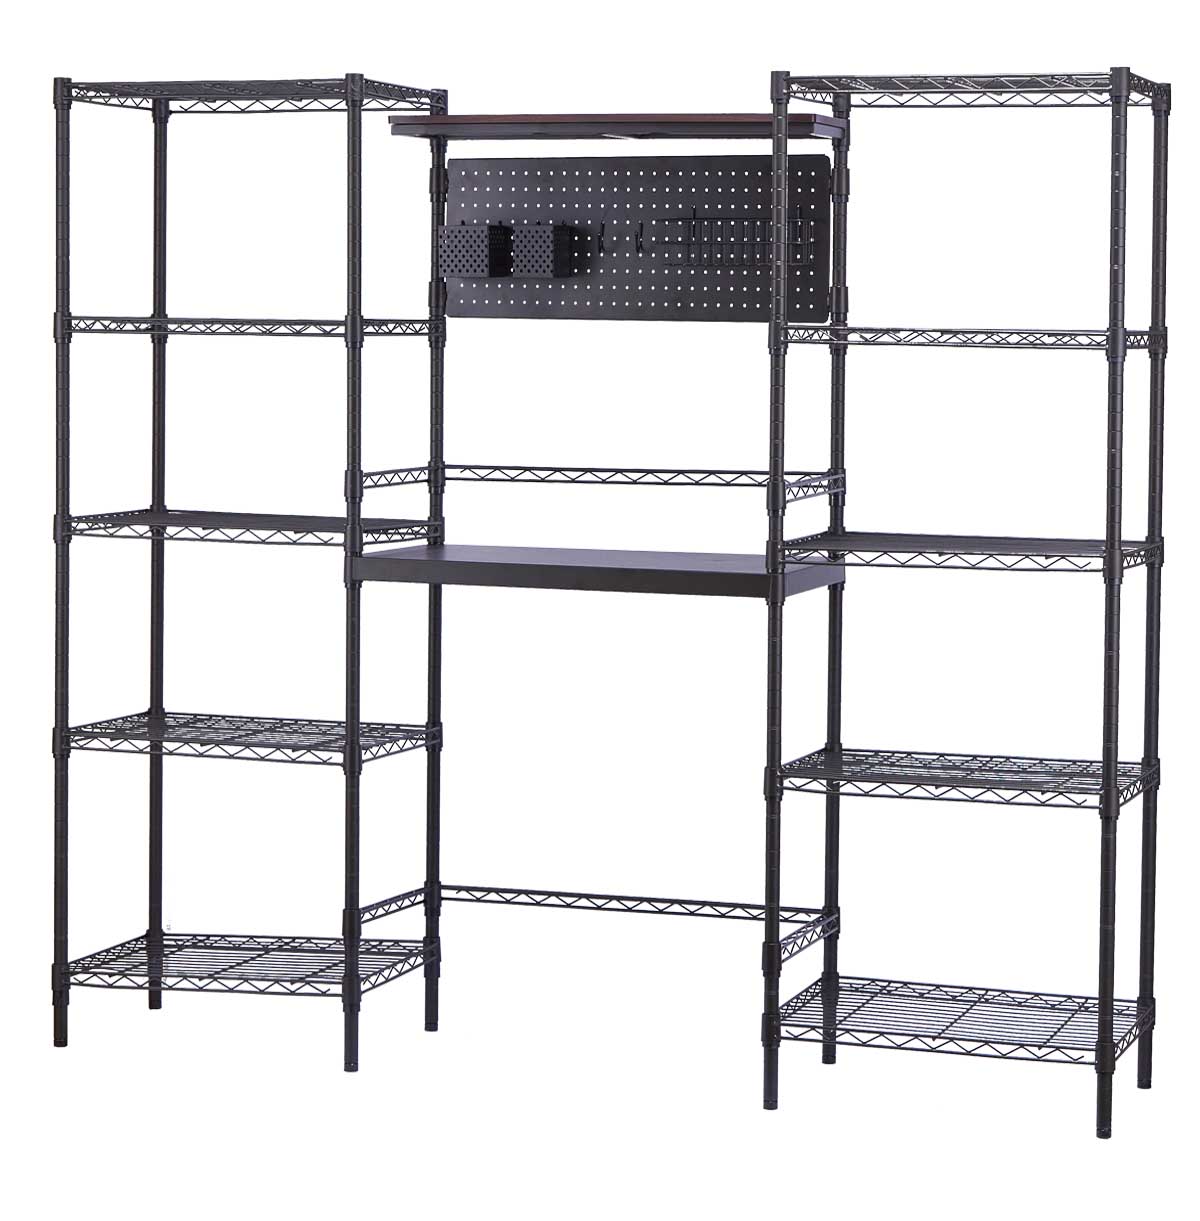 adjustable storage shelves